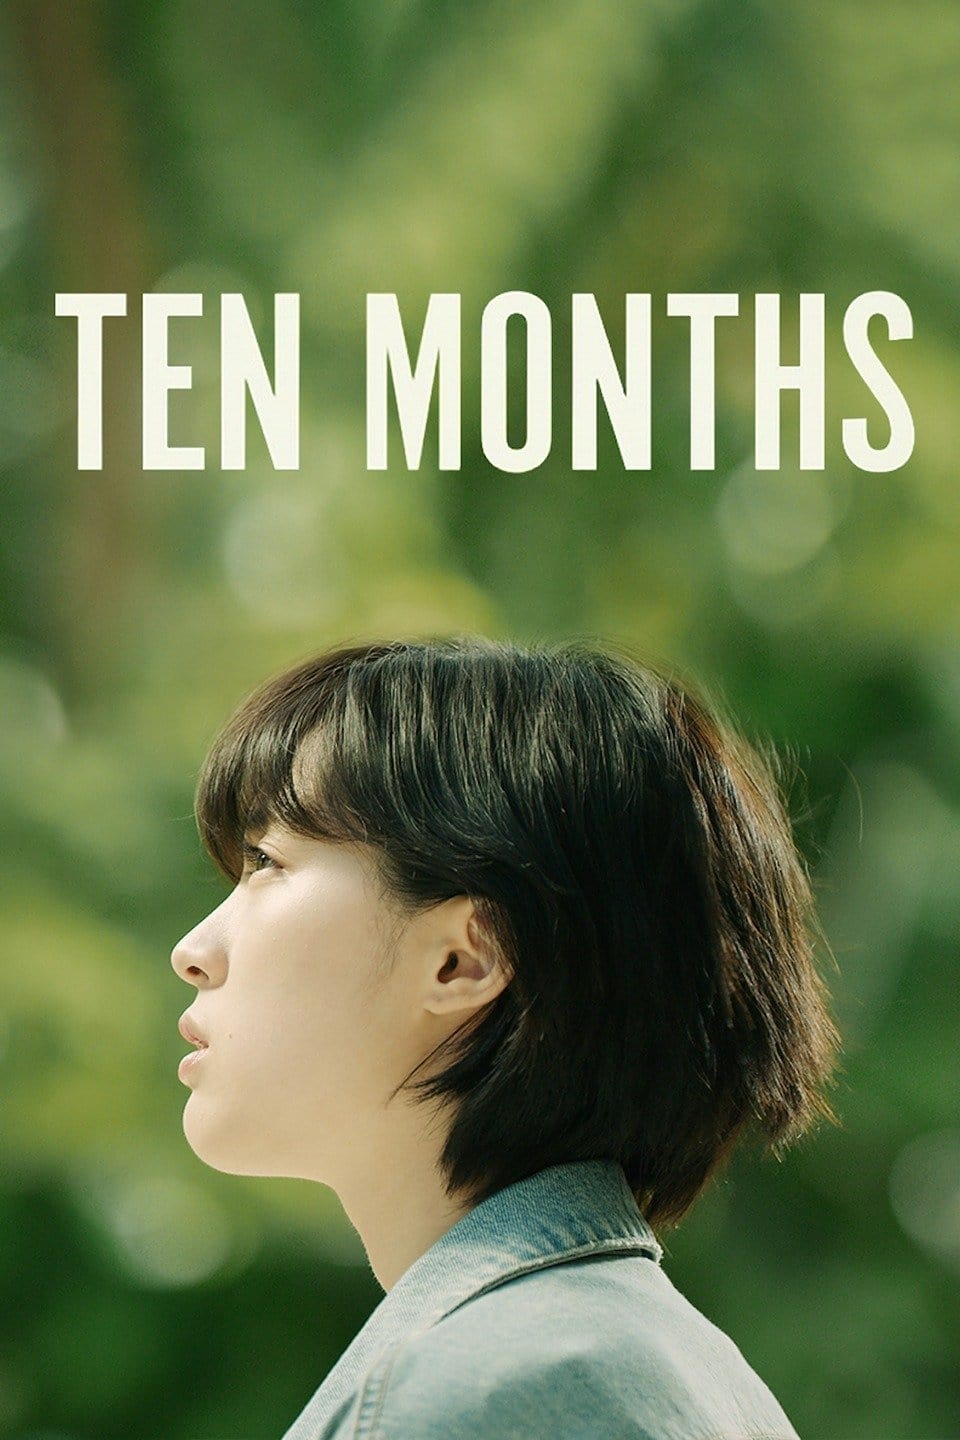 Ten Months